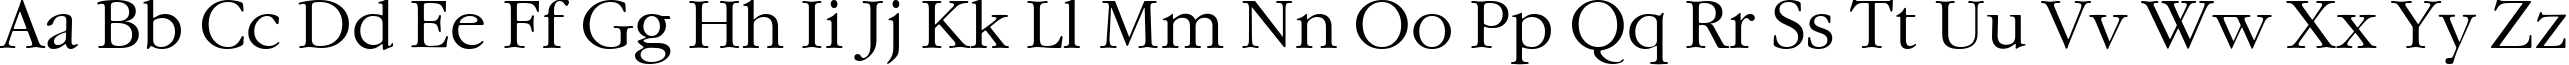 Пример написания английского алфавита шрифтом GaramondCTT